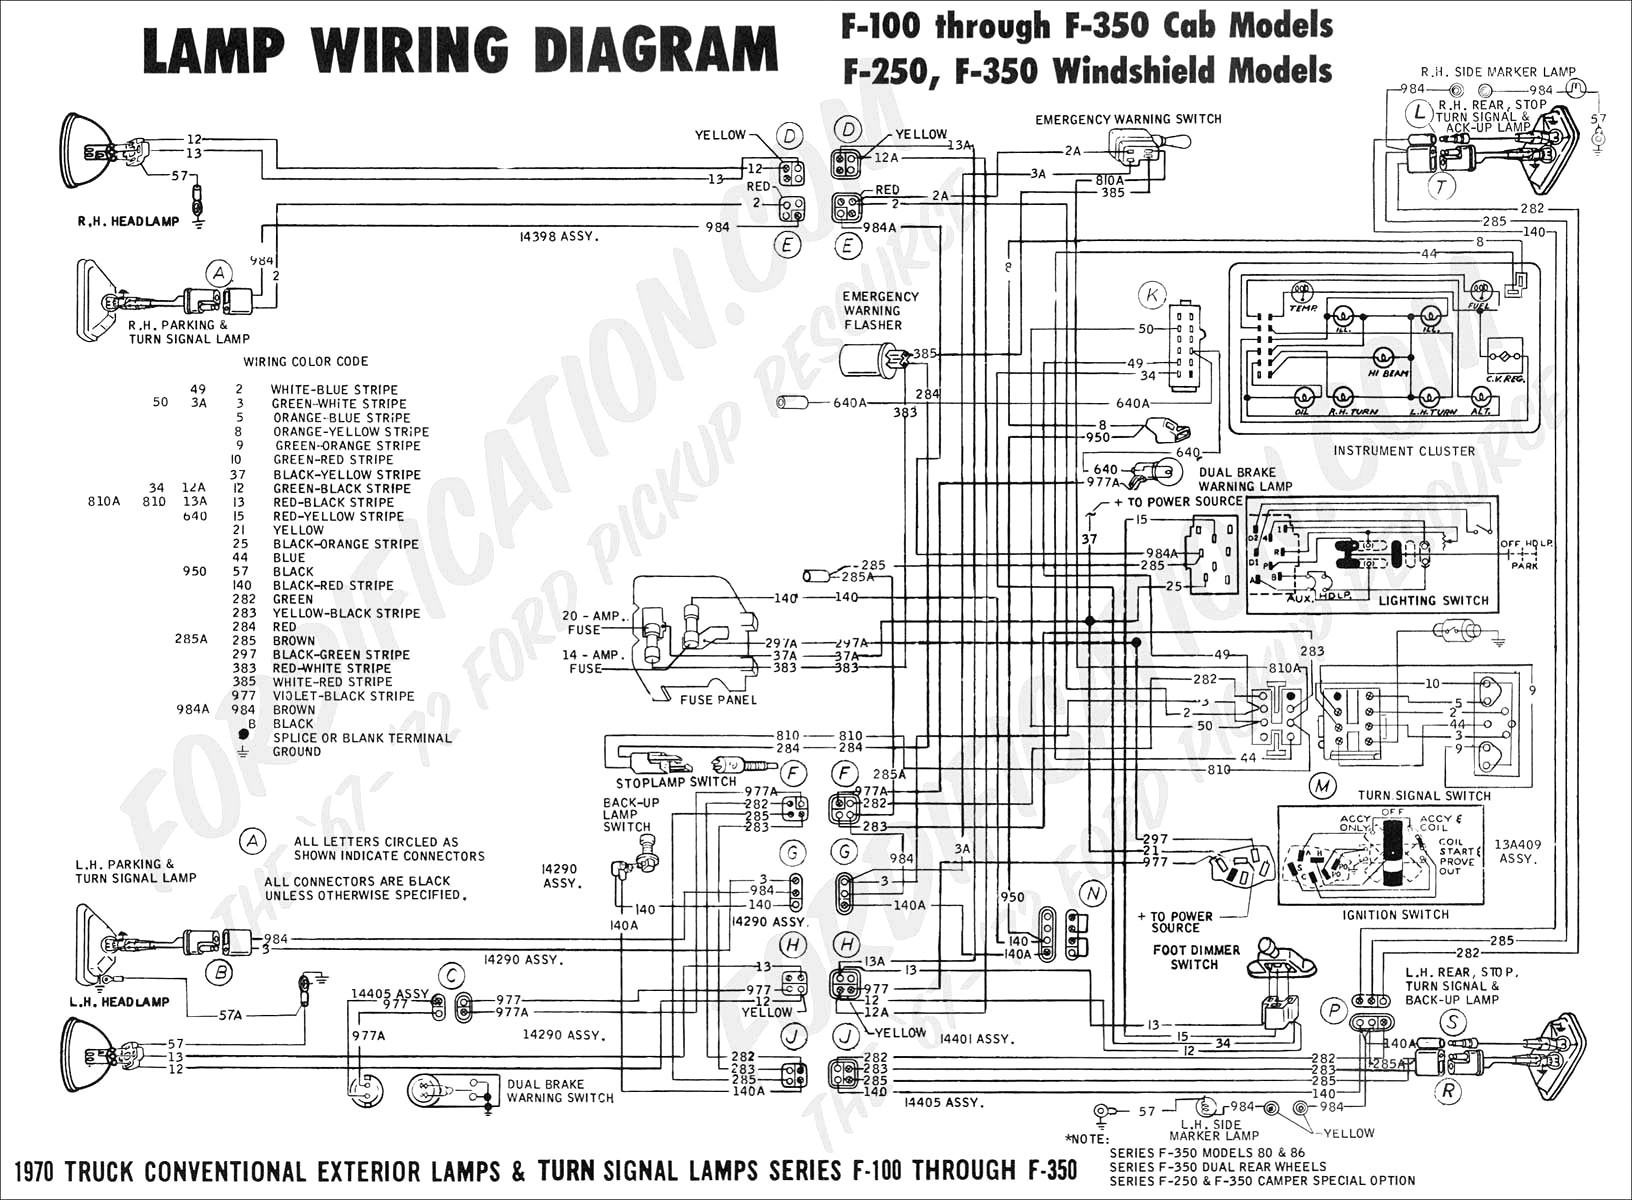 1998 ford Mustang Wiring Diagram Alternator Wiring Diagram ford Ranger Best Mustang Wiring Diagram Of 1998 ford Mustang Wiring Diagram